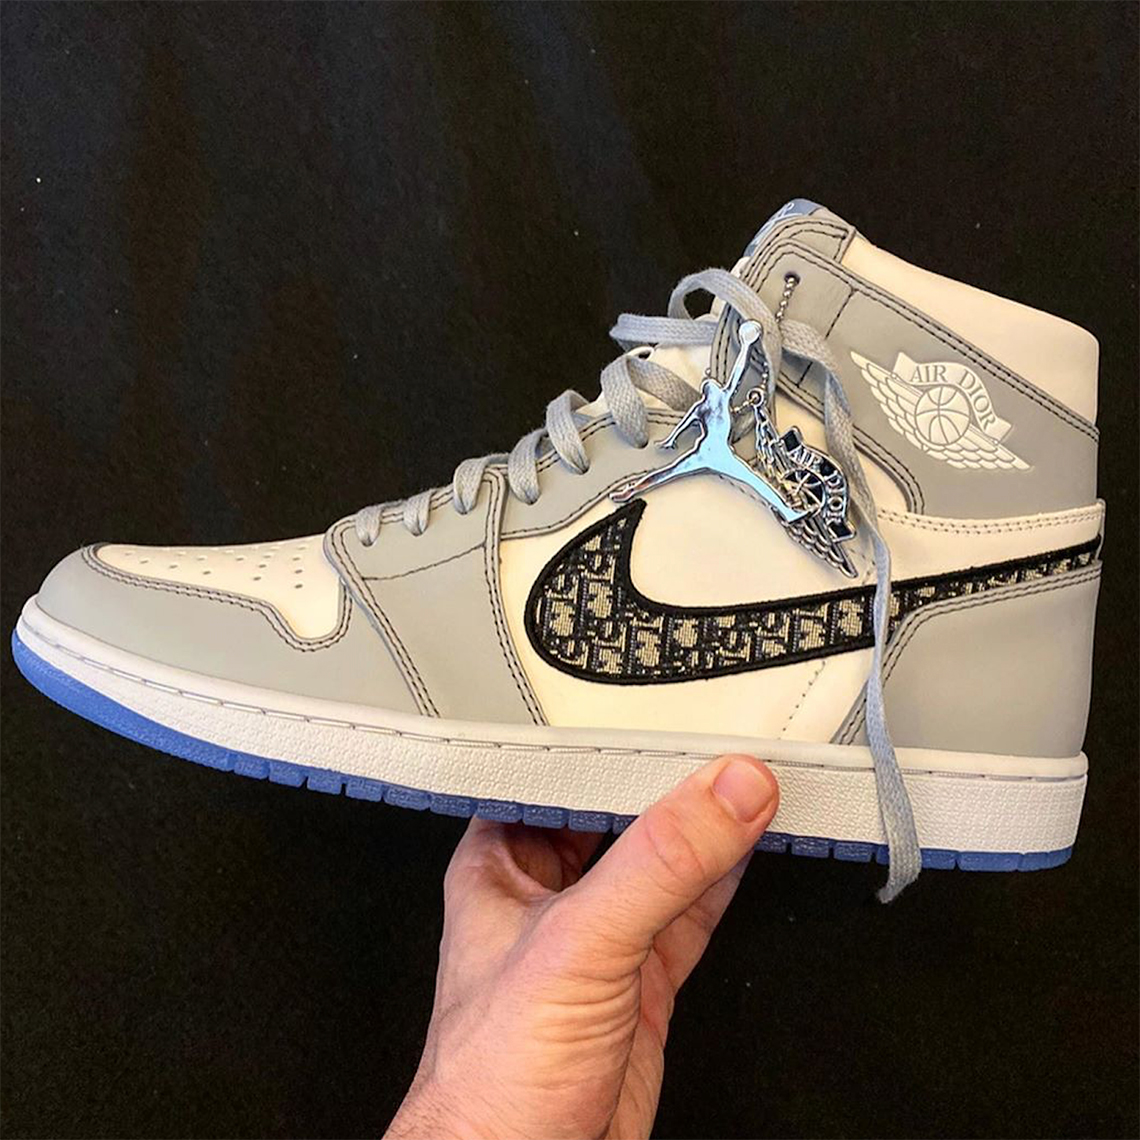 DIOR Air Jordan 1 First Look | SneakerNews.com